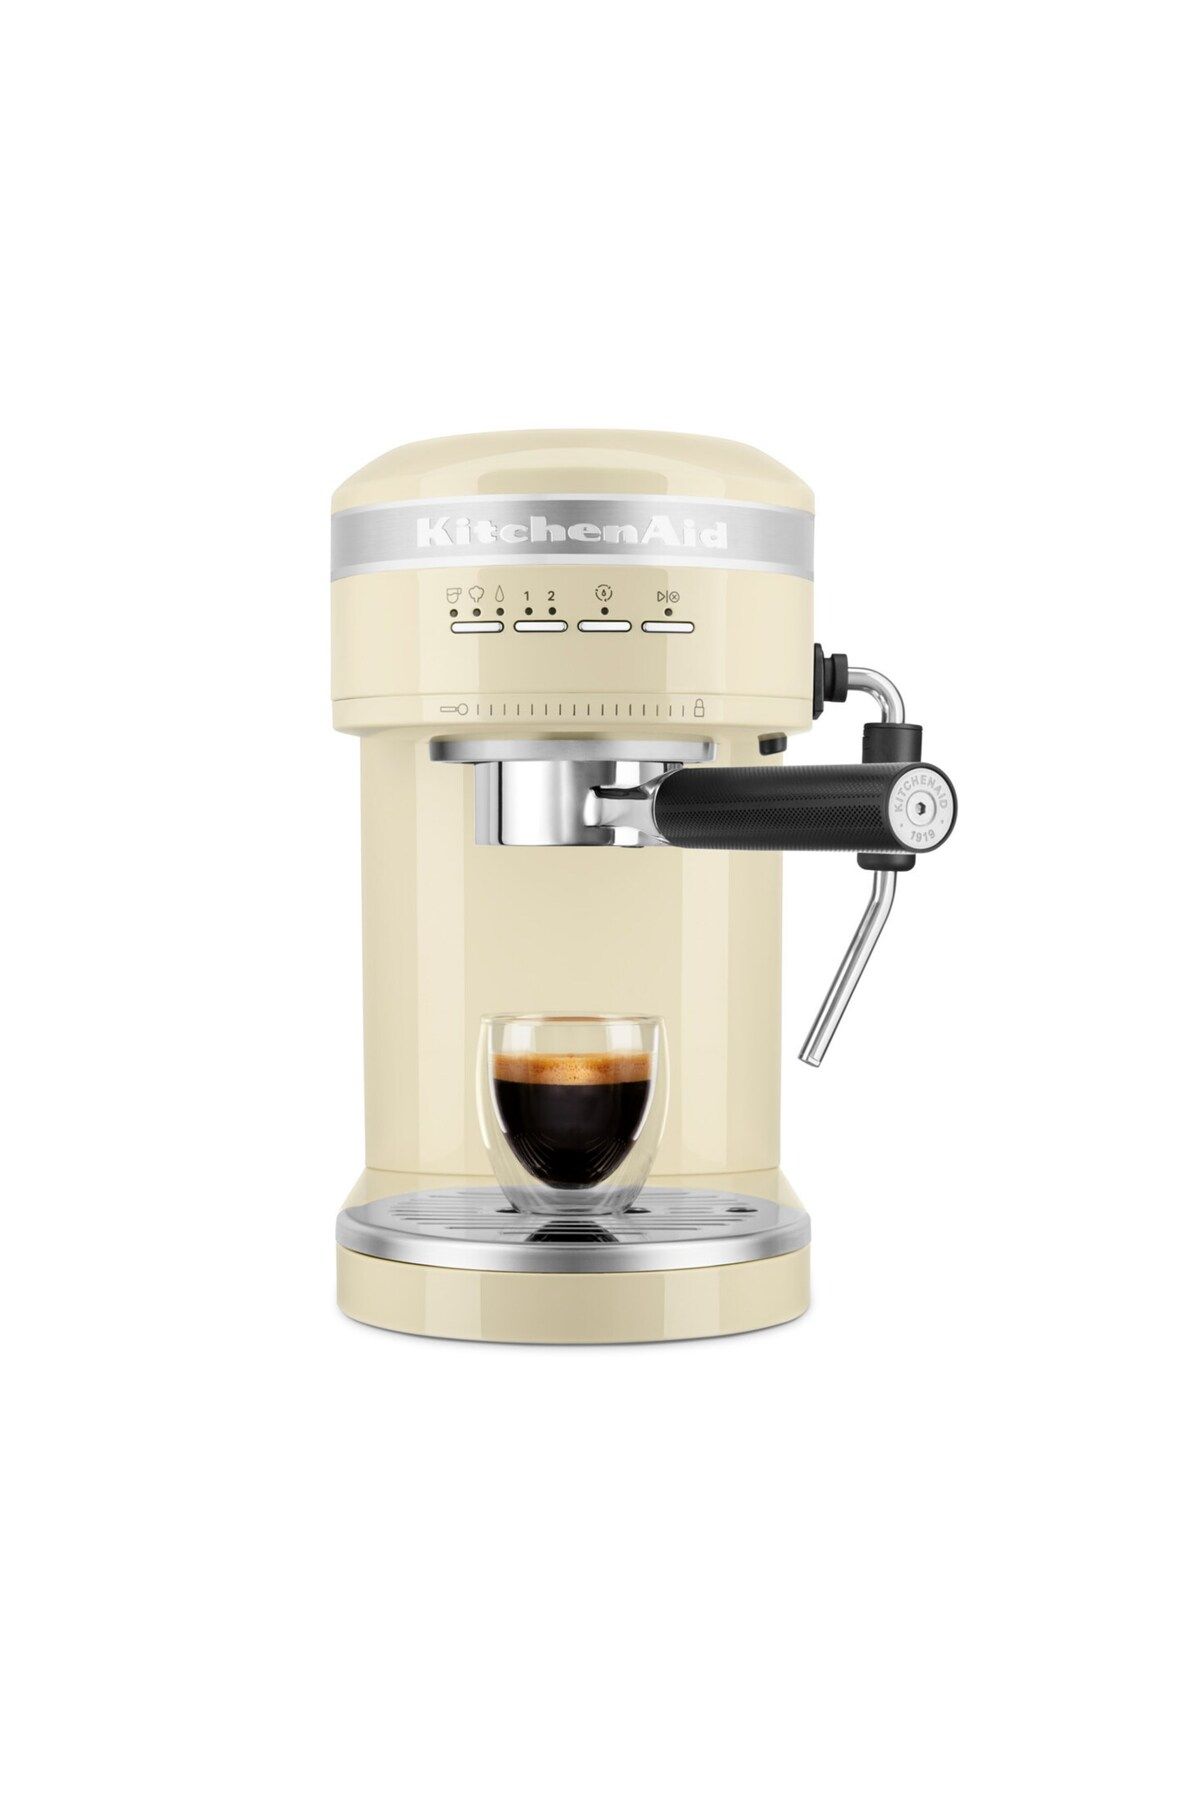 Kitchenaid Artısan Proline Espresso Makinası 5kes6503 Almond Cream Eac